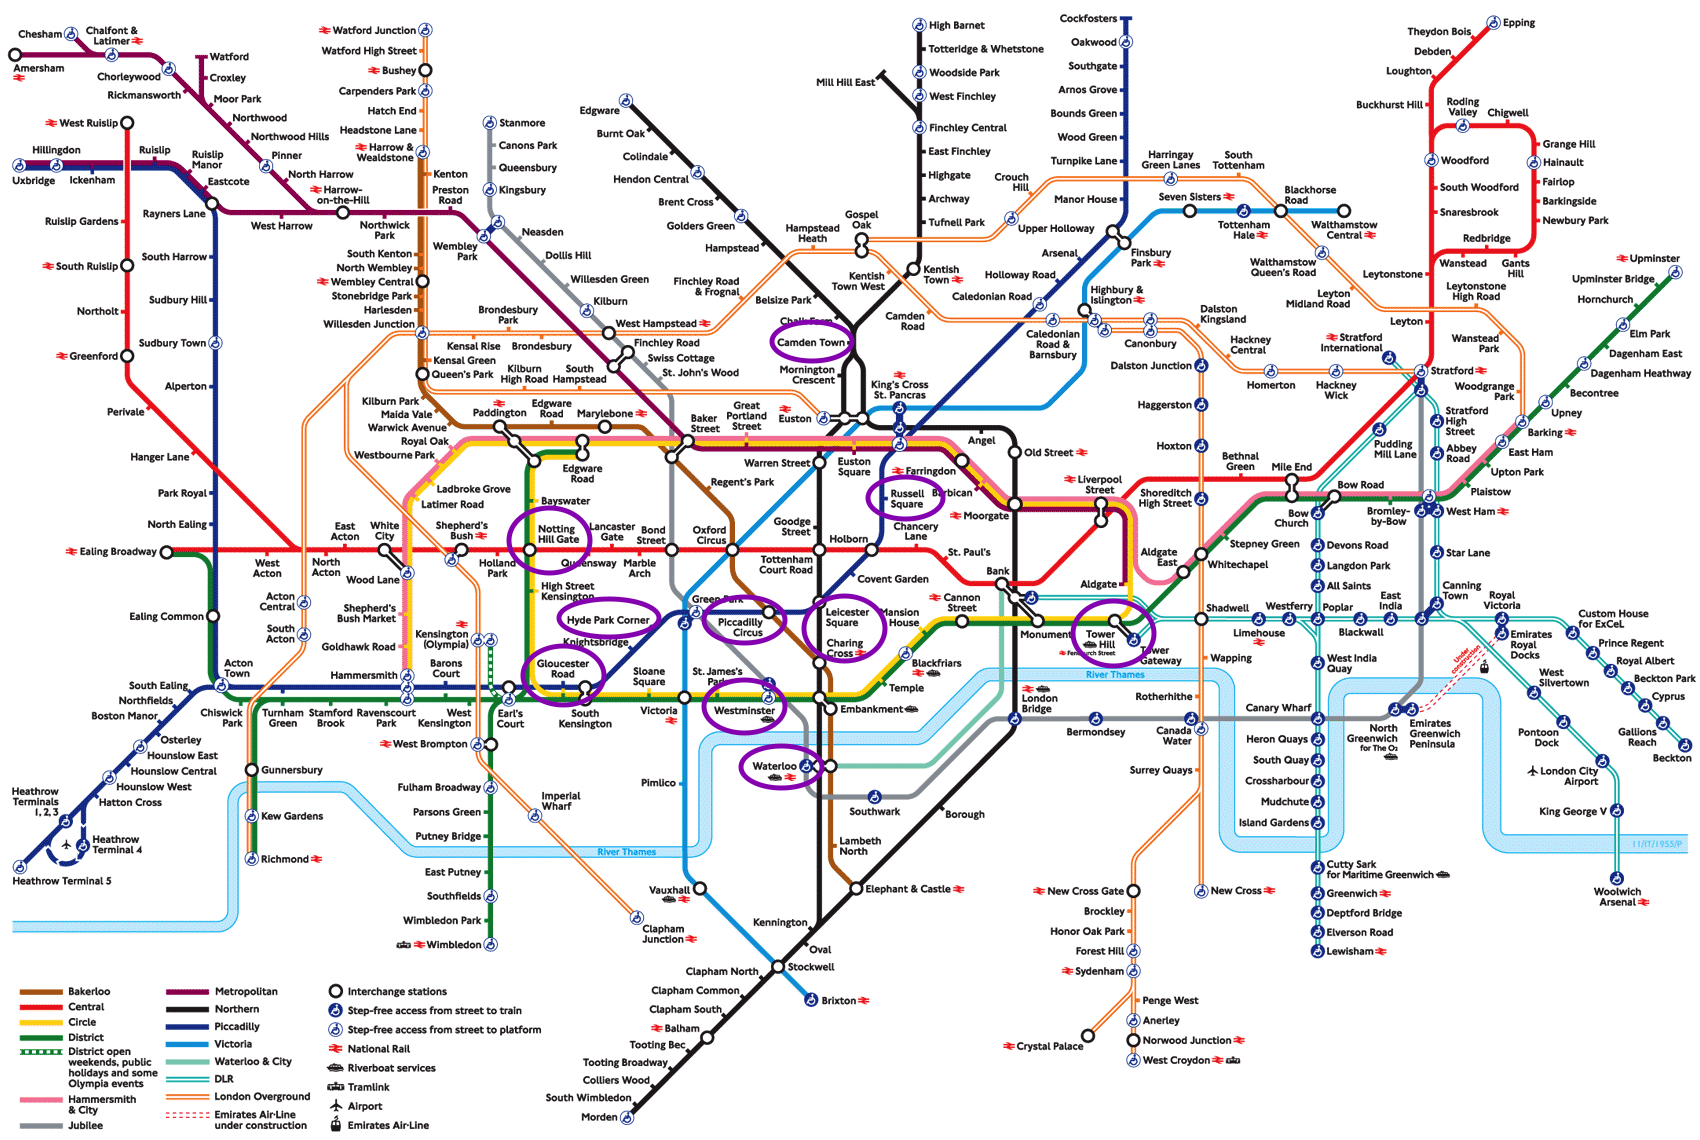 Mapa del metro de Londres